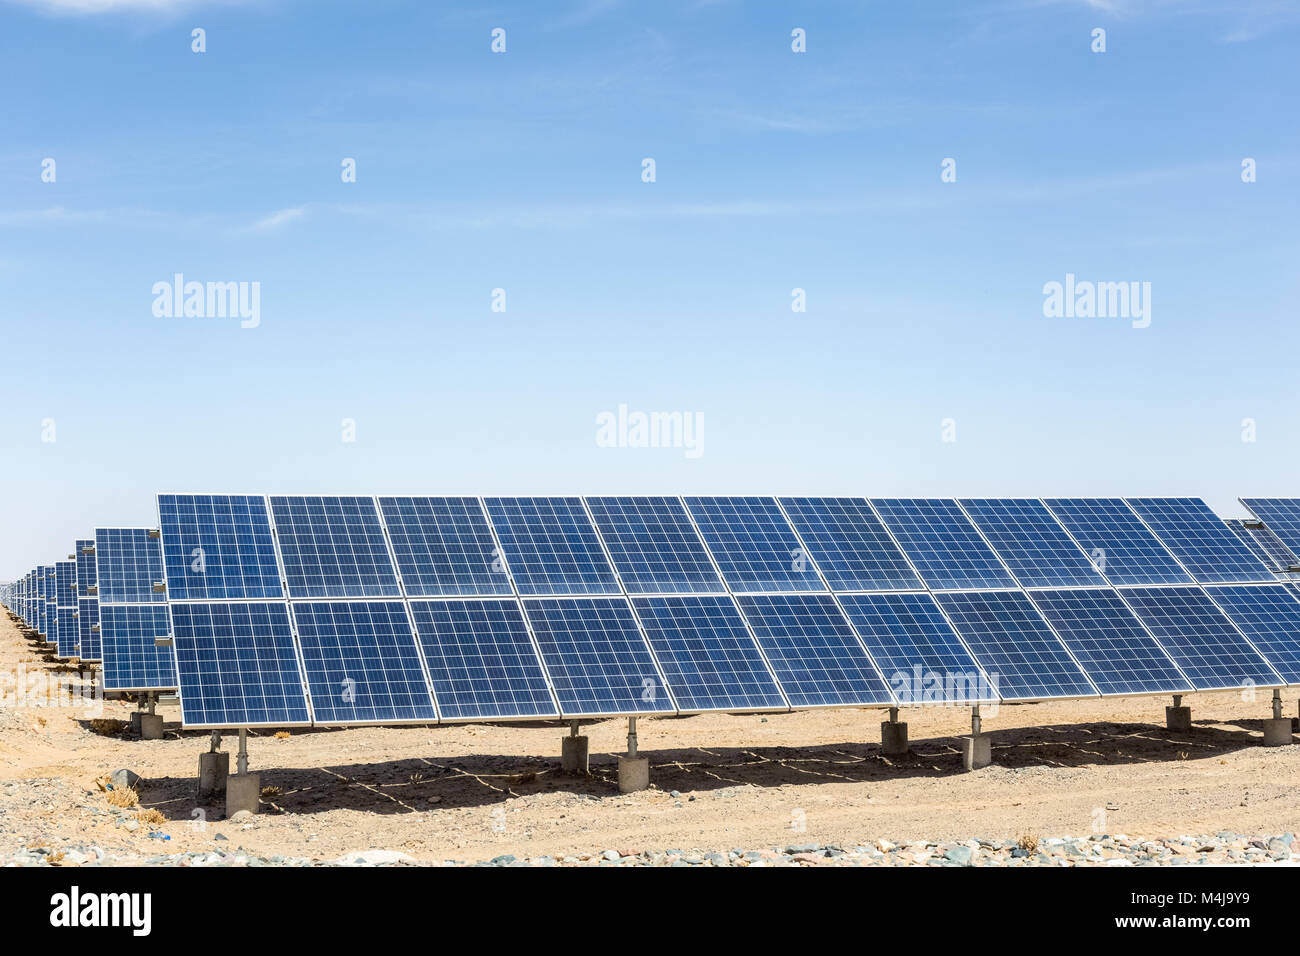 solar energy on gobi desert Stock Photo